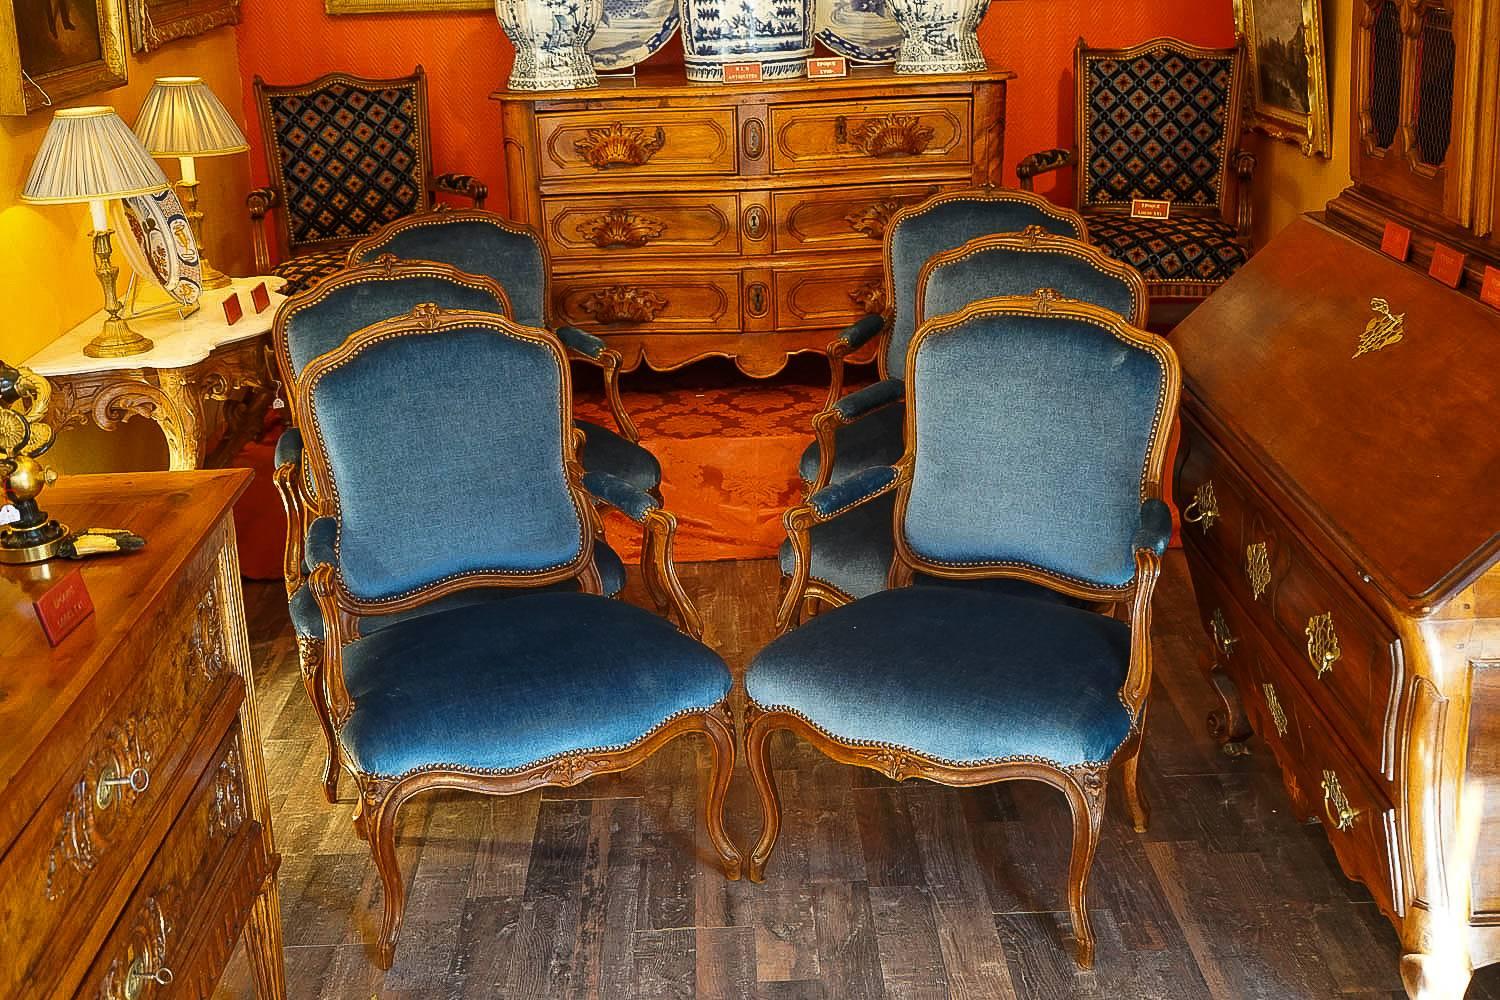 Nous avons le plaisir de vous présenter un bel et rare ensemble de six grands fauteuils en bois de hêtre avec une sculpture florale sur le dossier et l'assise avant.

Nos fauteuils sont en excellent état et sont recouverts d'un tissu en velours